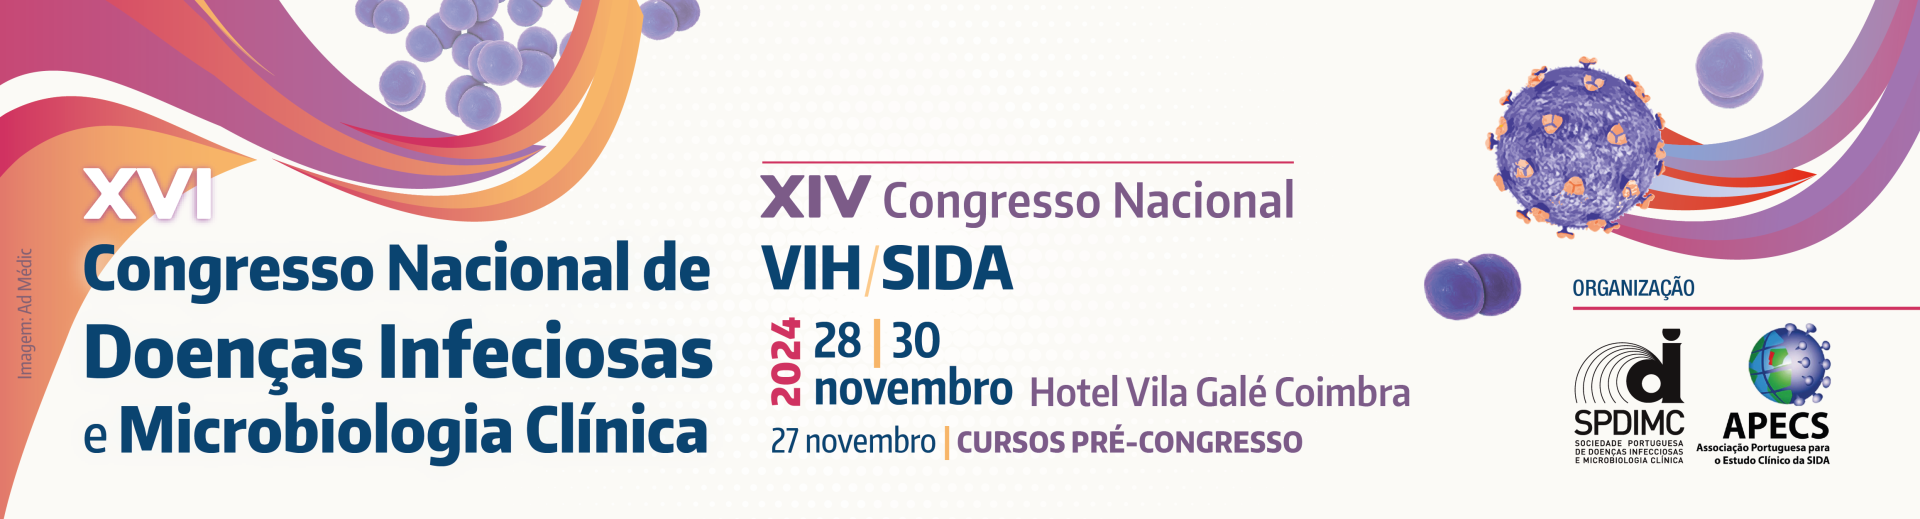 XVI Congresso Nacional de Doenas Infeciosas e Microbiologia Clnica | XIV Congresso Nacional VIH/SIDA